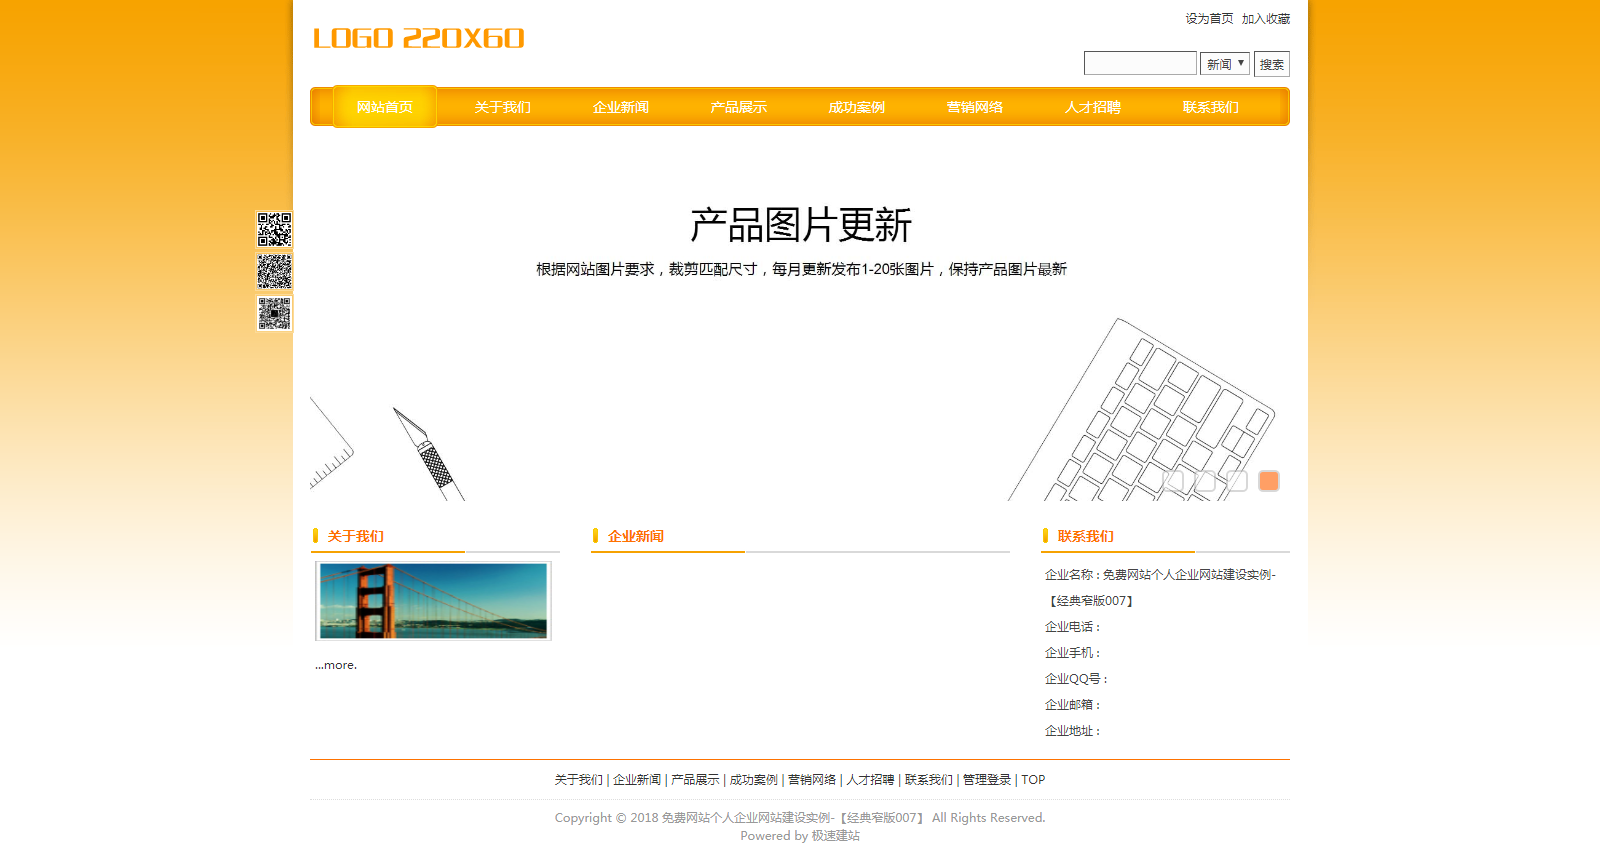 酷炫橙经典窄版免费网站个人企业自助建站模板-007#网站建设 (1).png